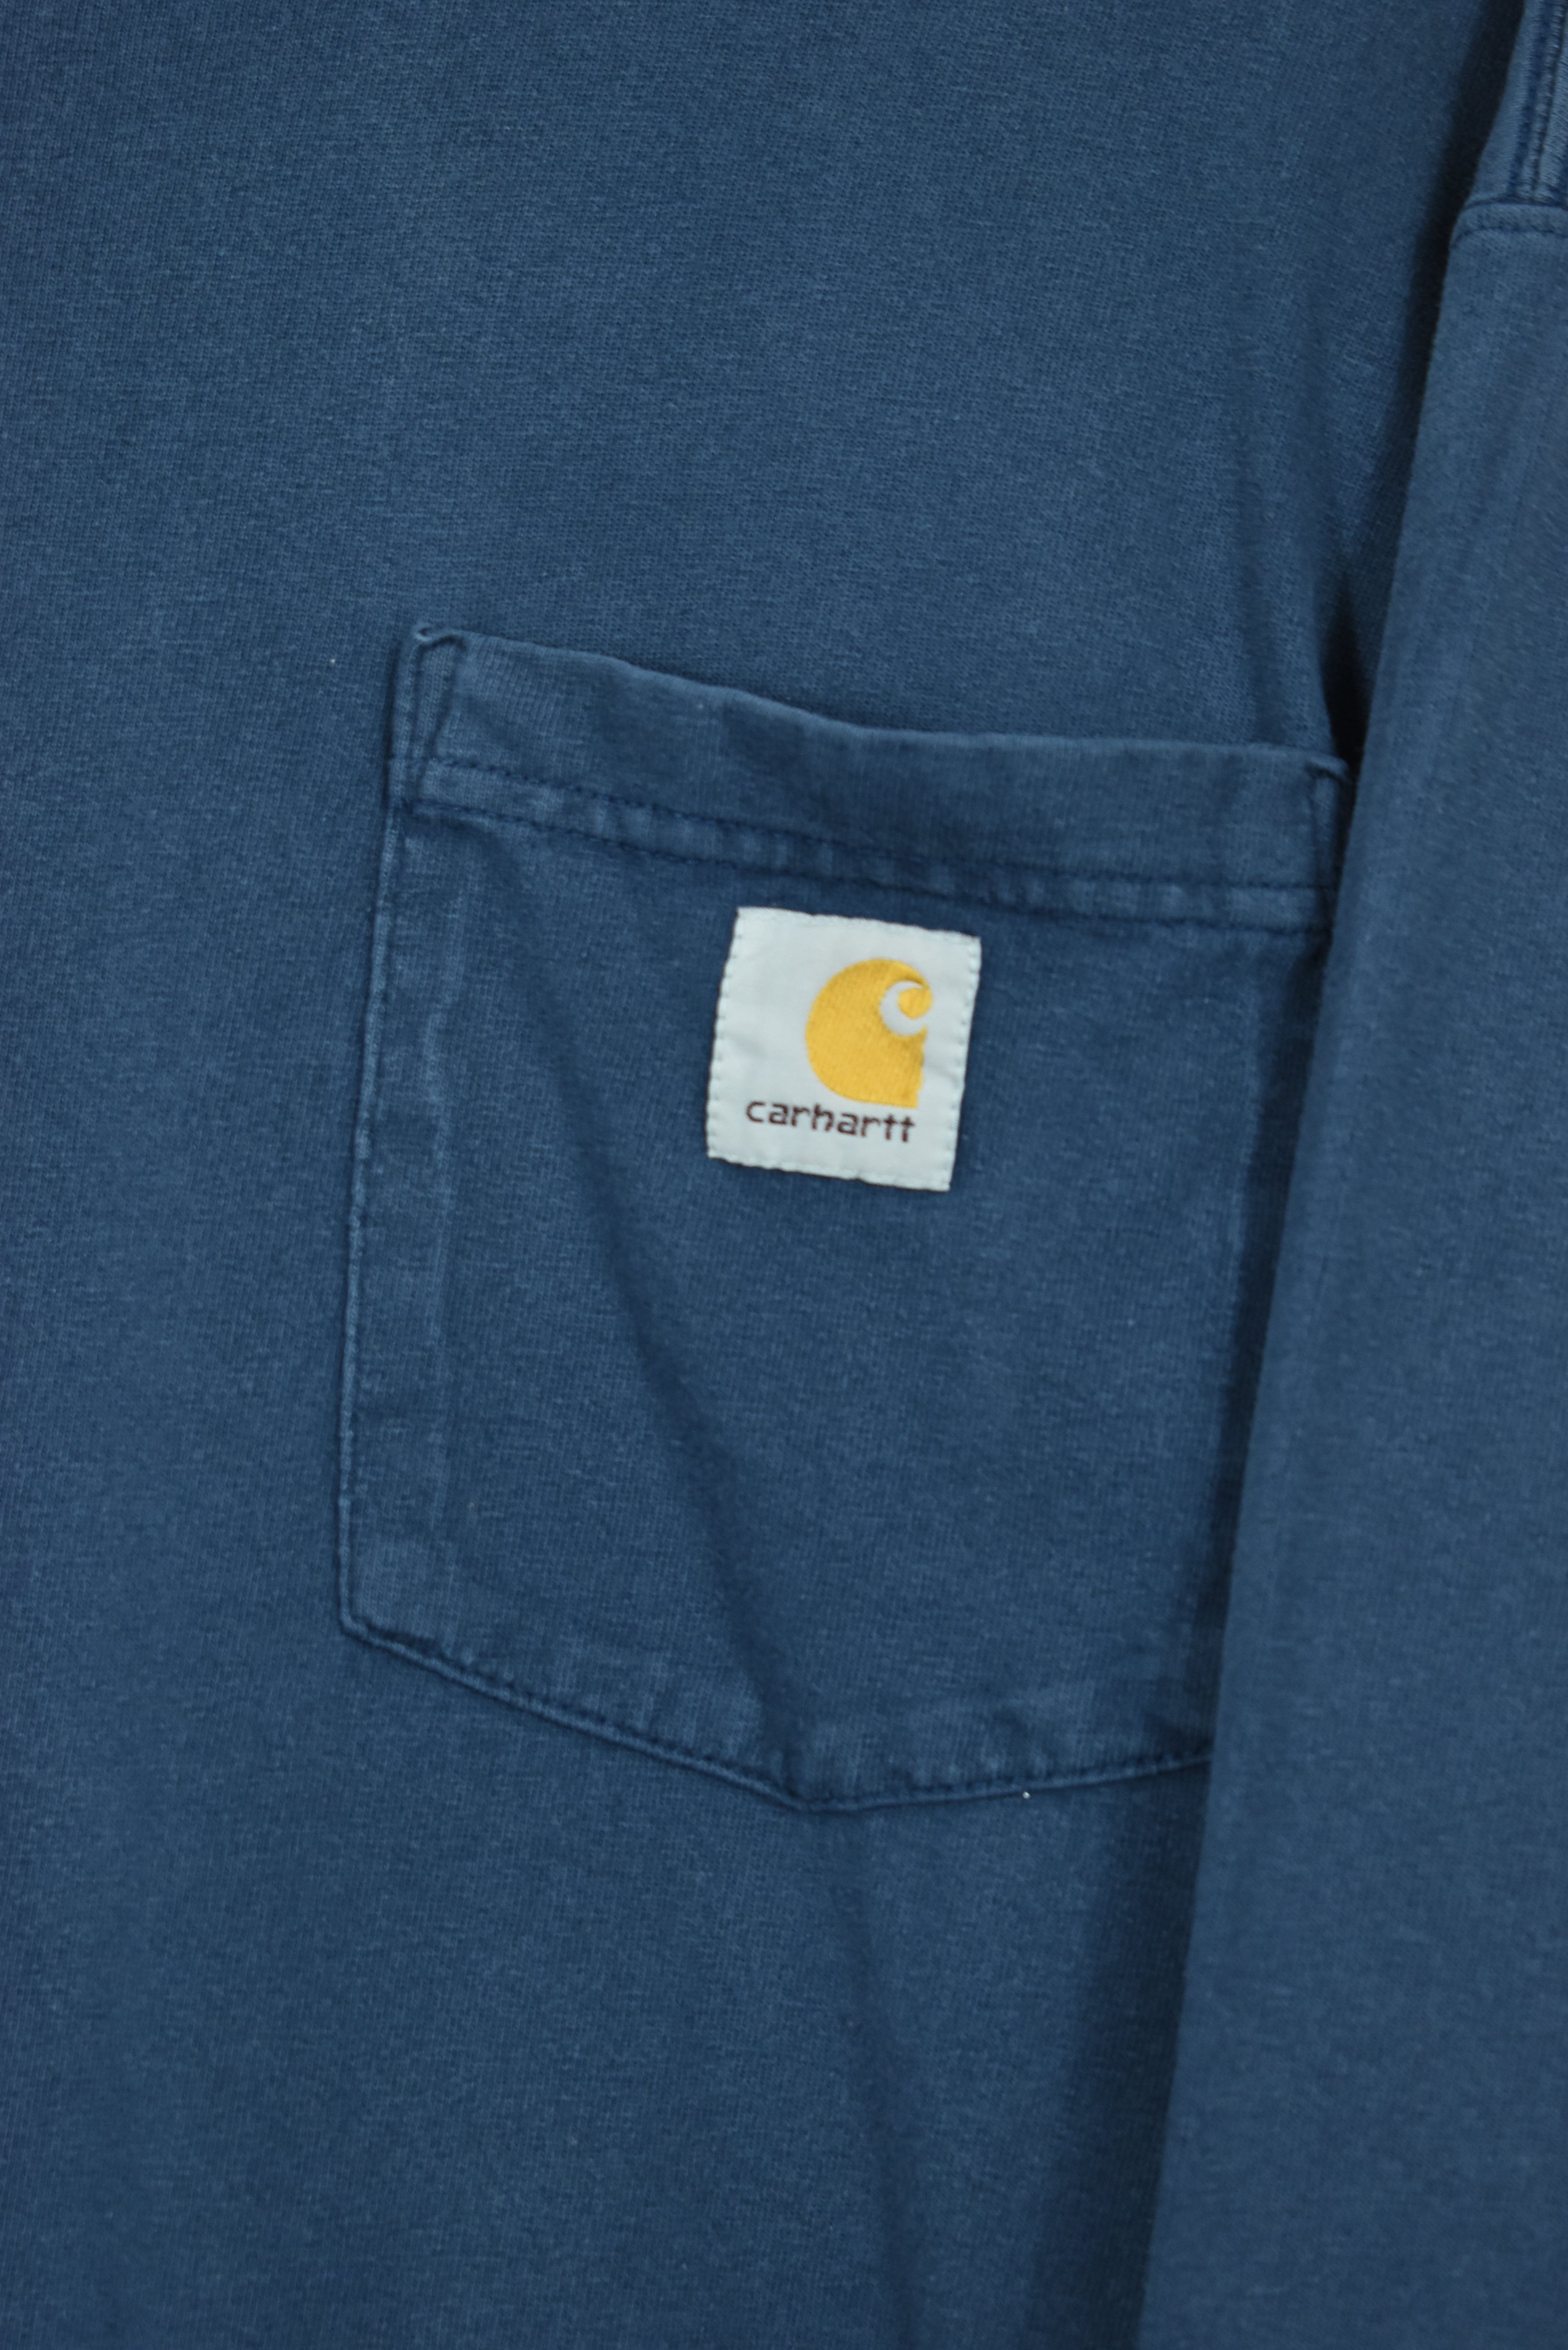 Vintage Carhartt Logo Long Sleeve Pocket T Shirt Medium